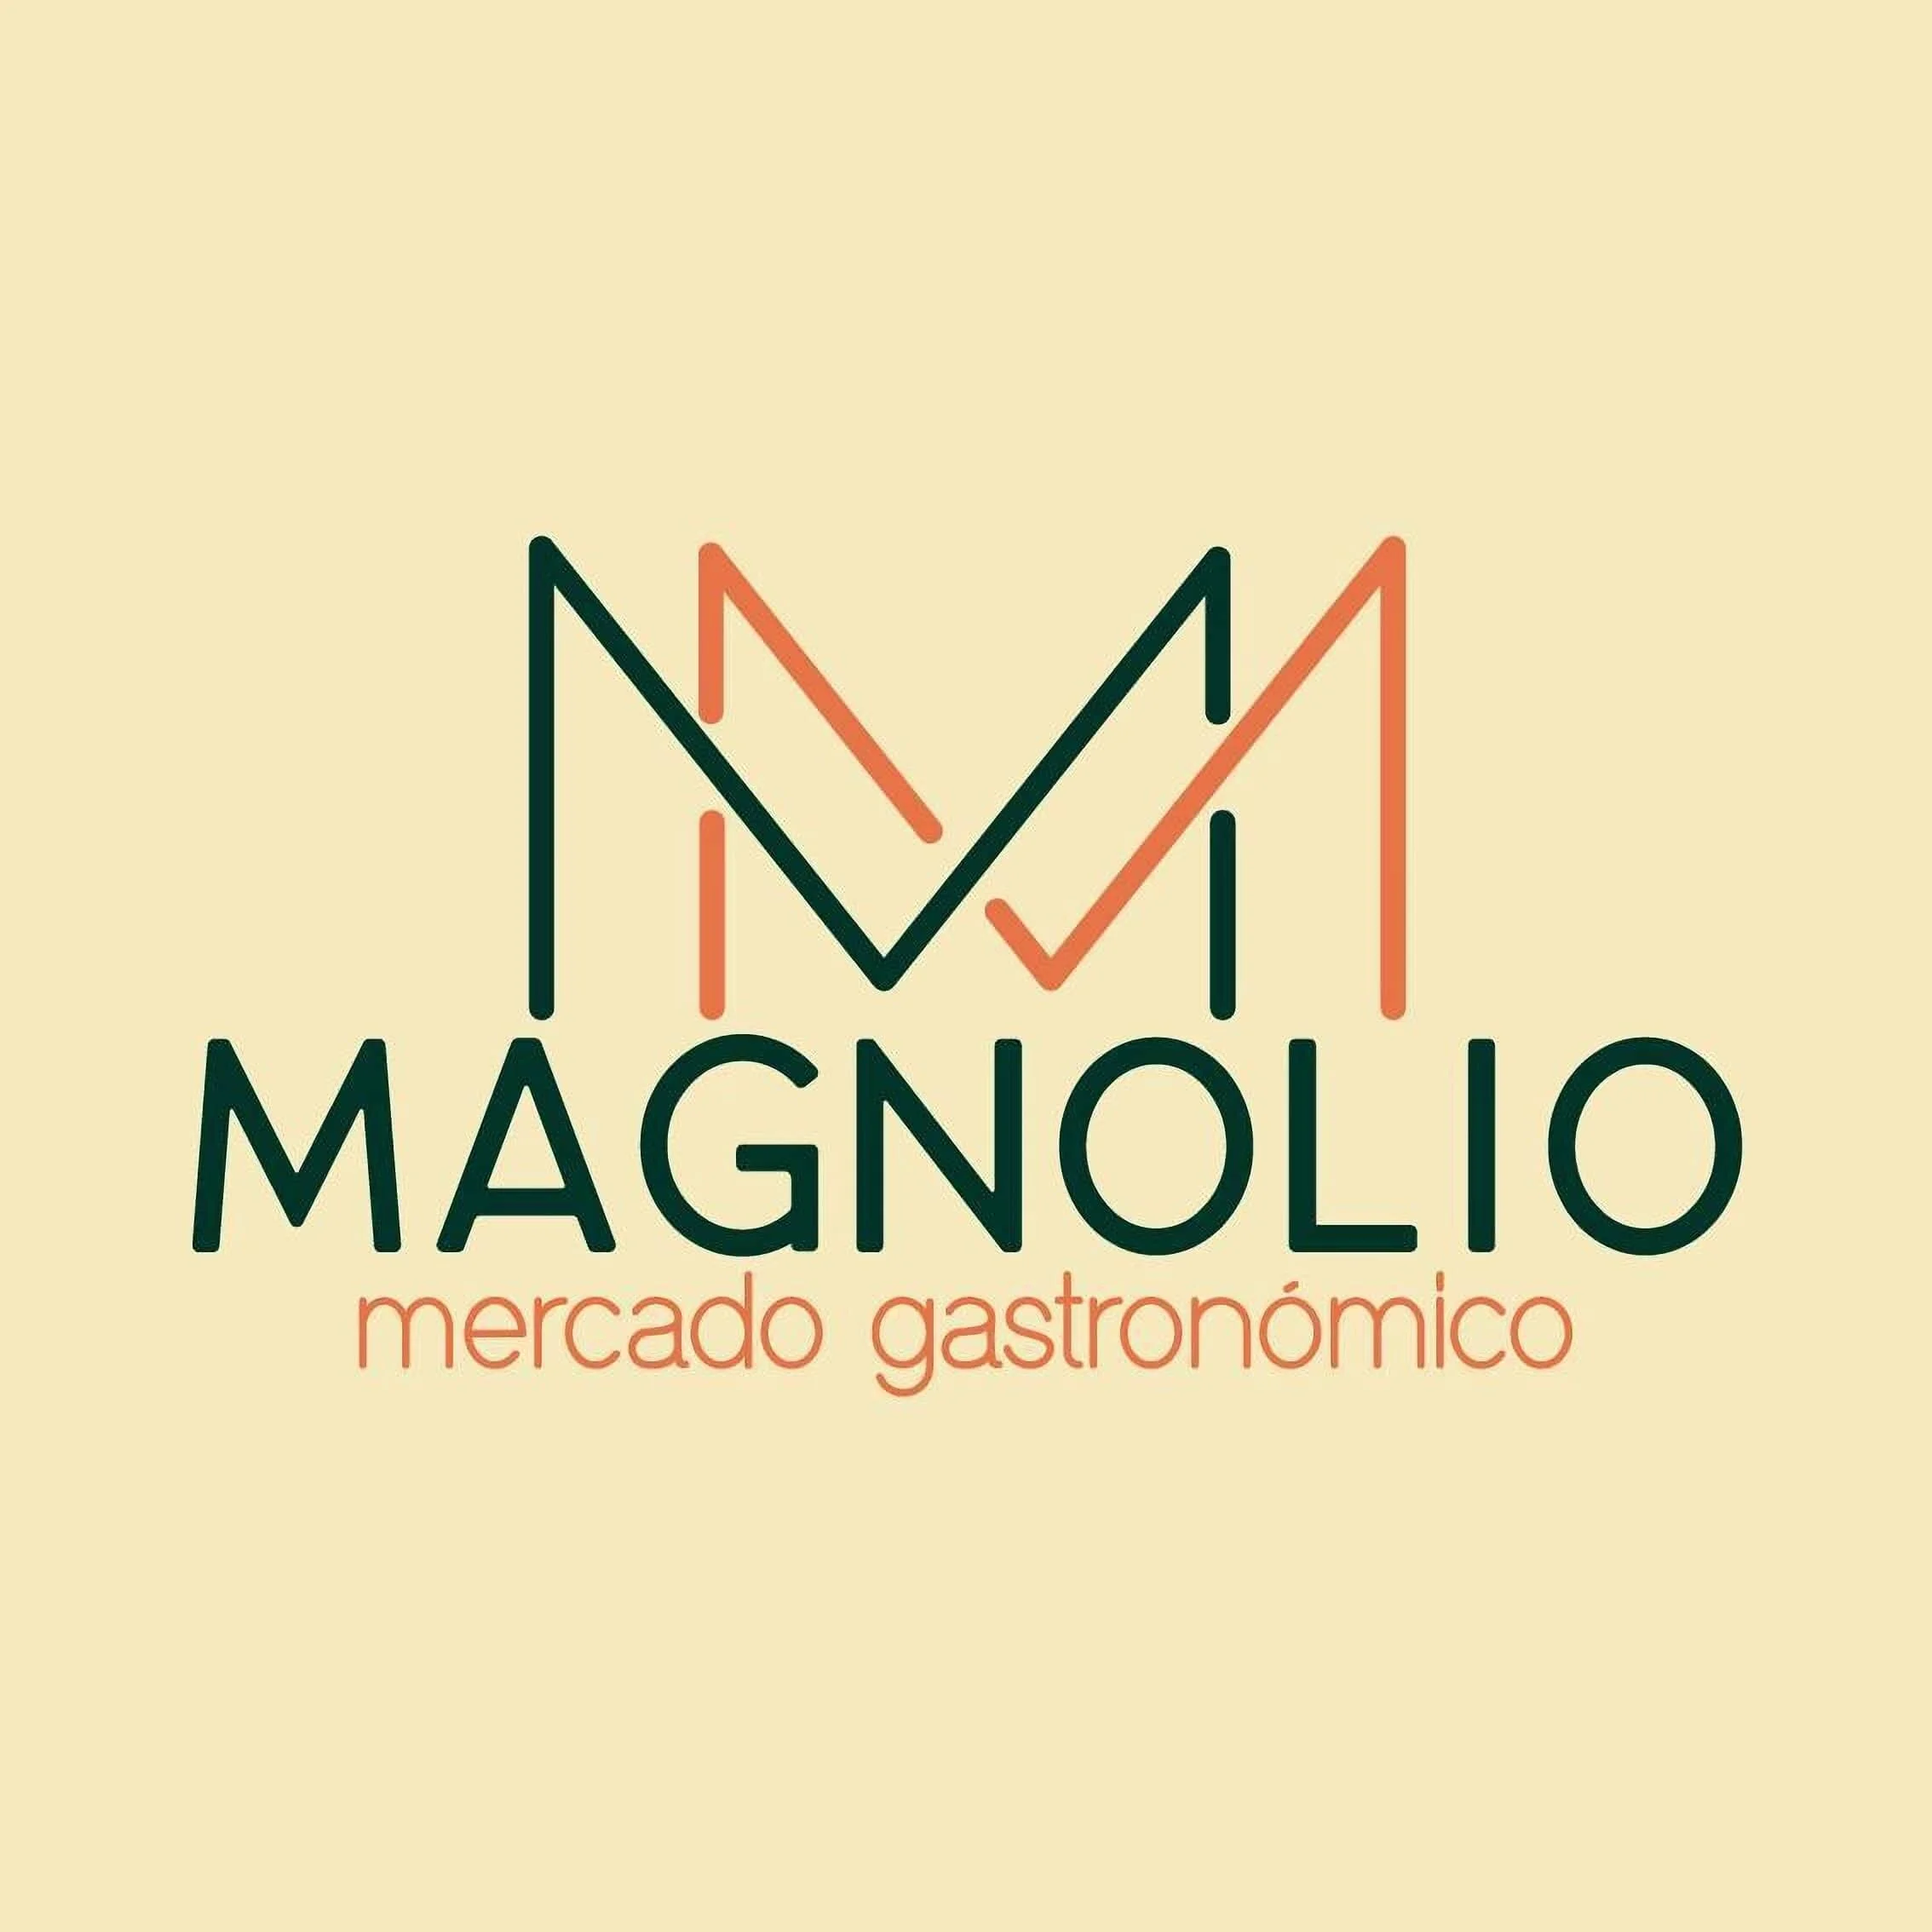 Restaurante-magnolio-mercado-gastronomico-21358